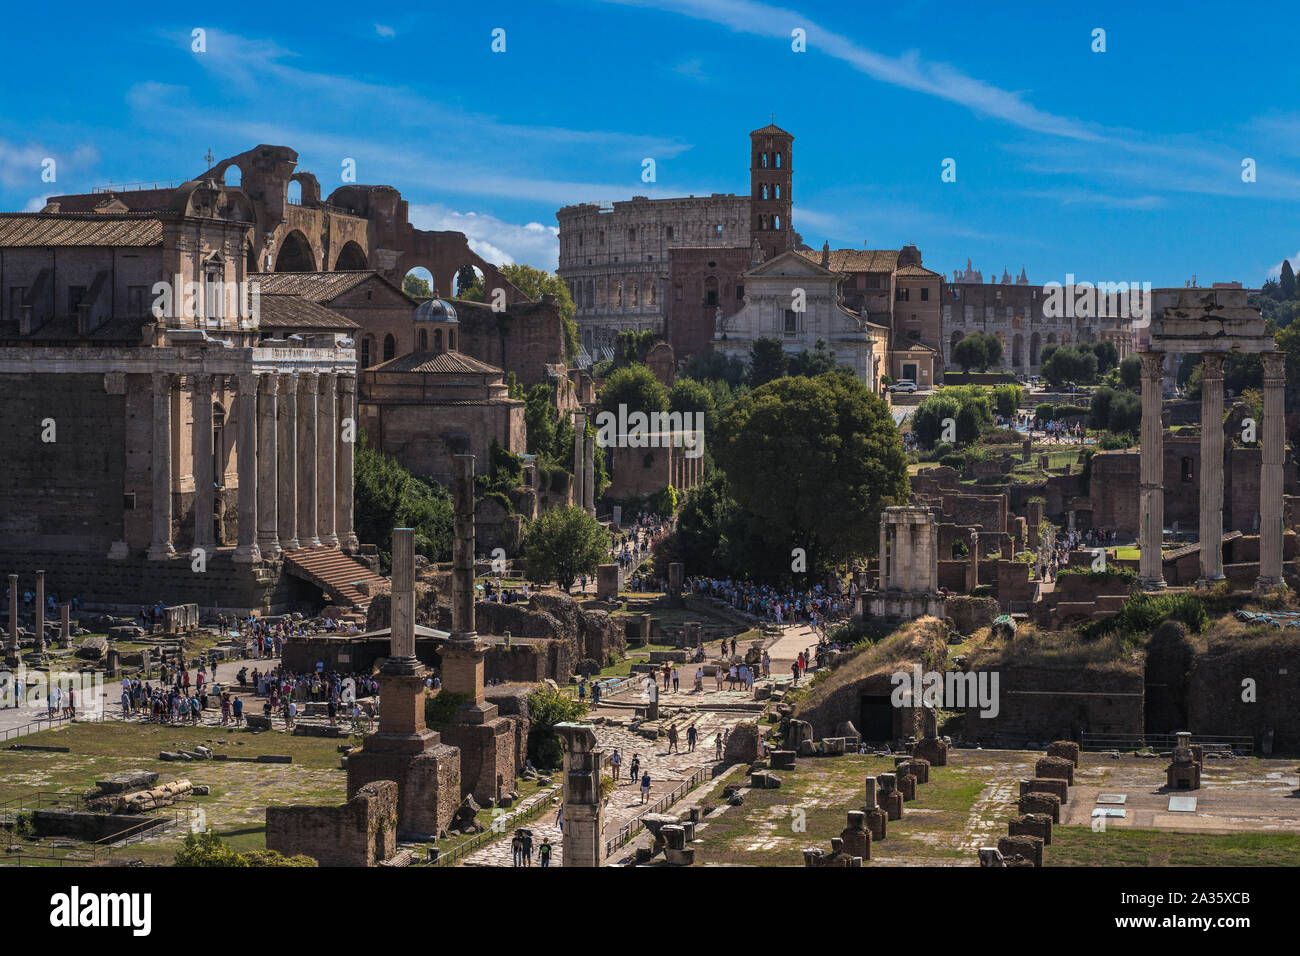 Schöne Sicht auf das Forum Romanum in Rom, Italien. Malerischer Blick auf das Forum Romanum in Rom, Kolosseum ist im Hintergrund Stockfoto